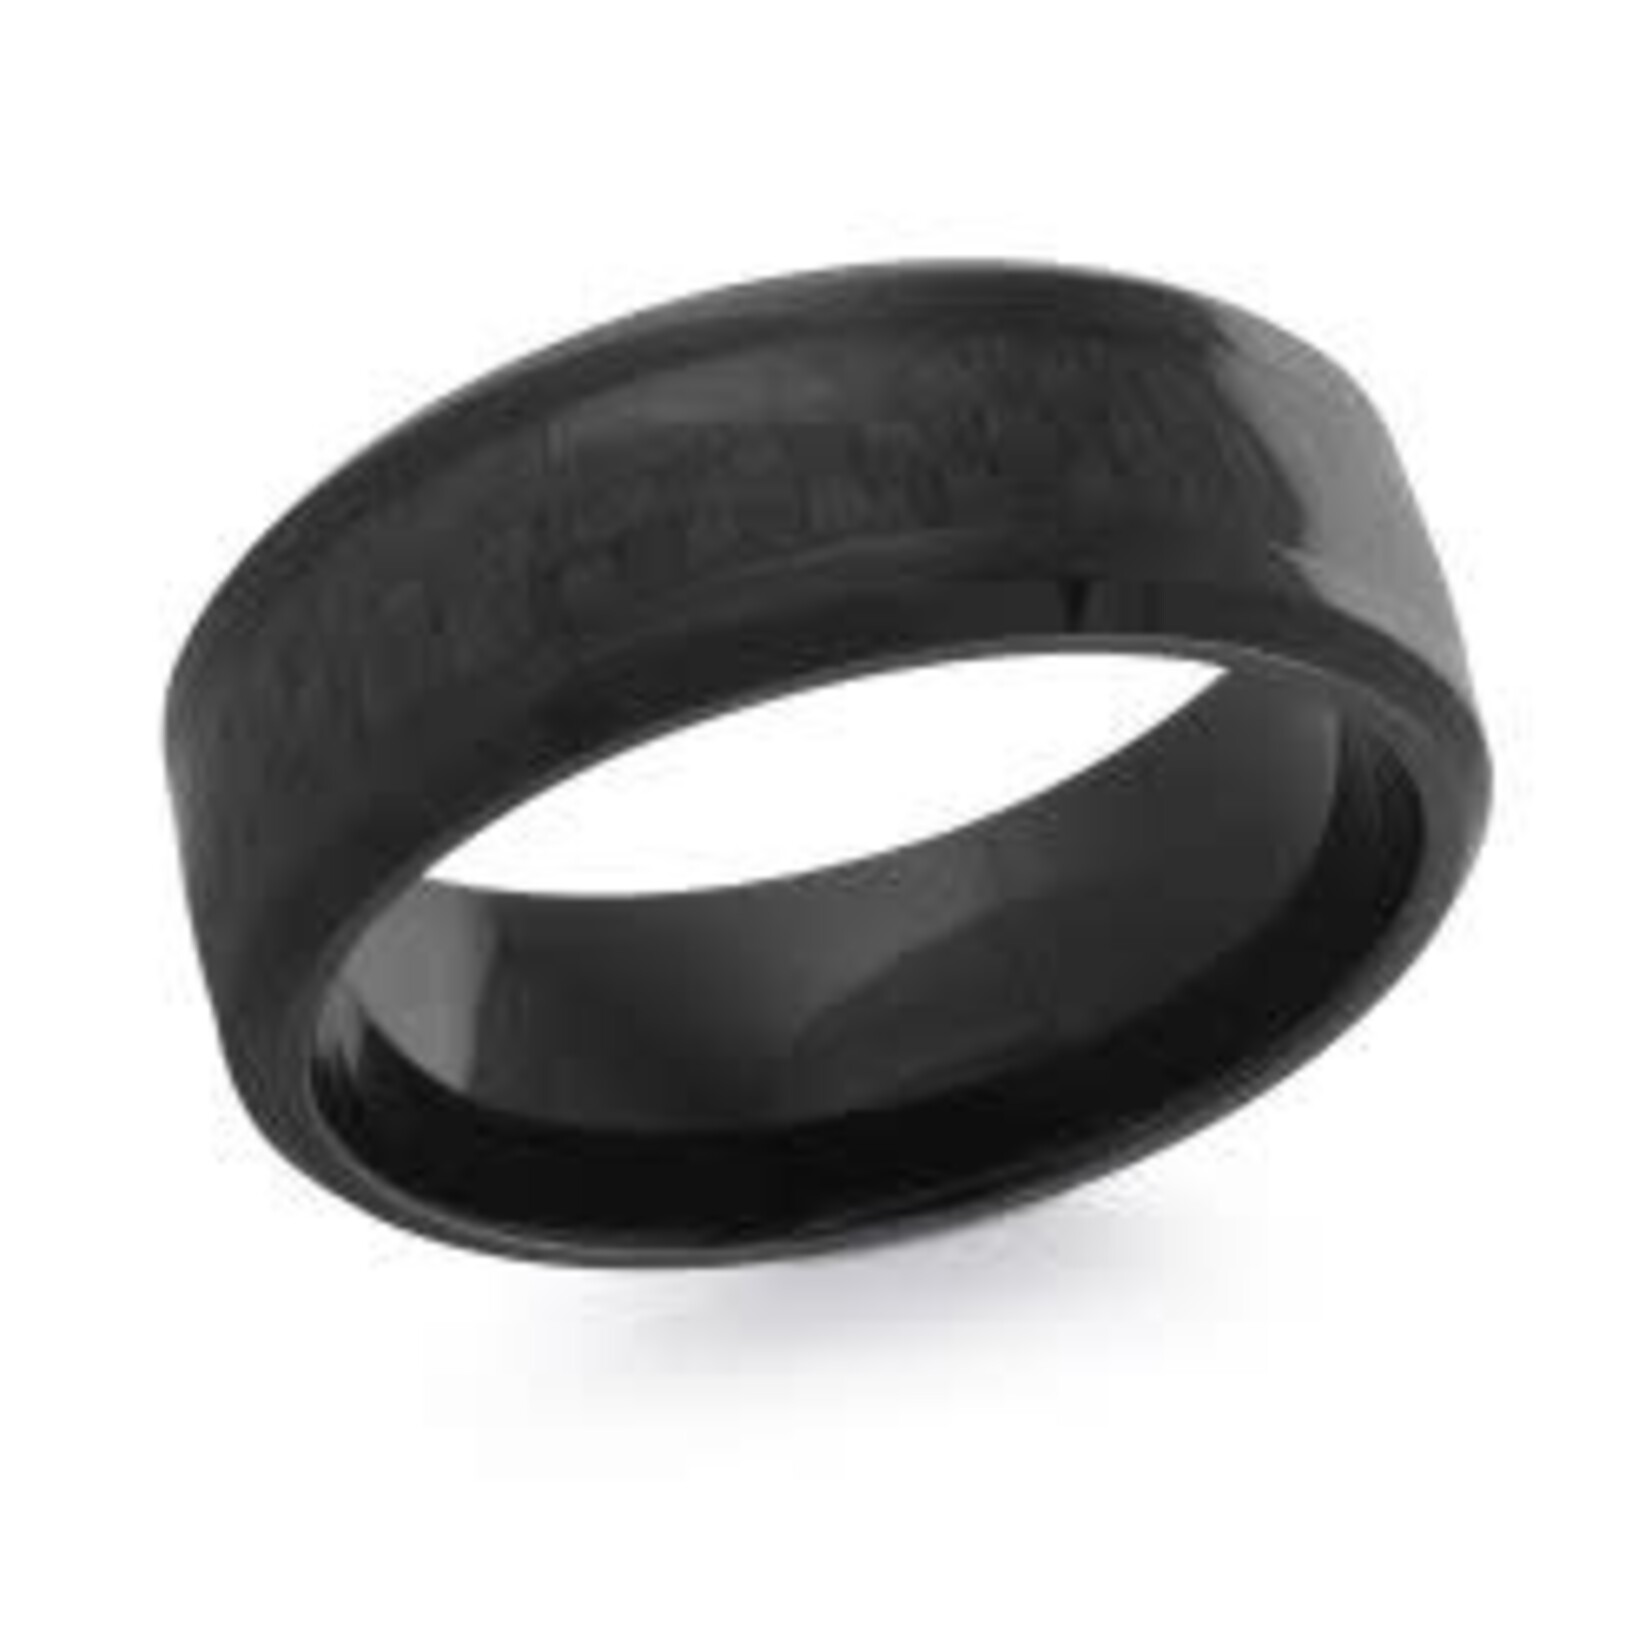 Black Polished Cobalt w/Carbon Fiber Wedding Band